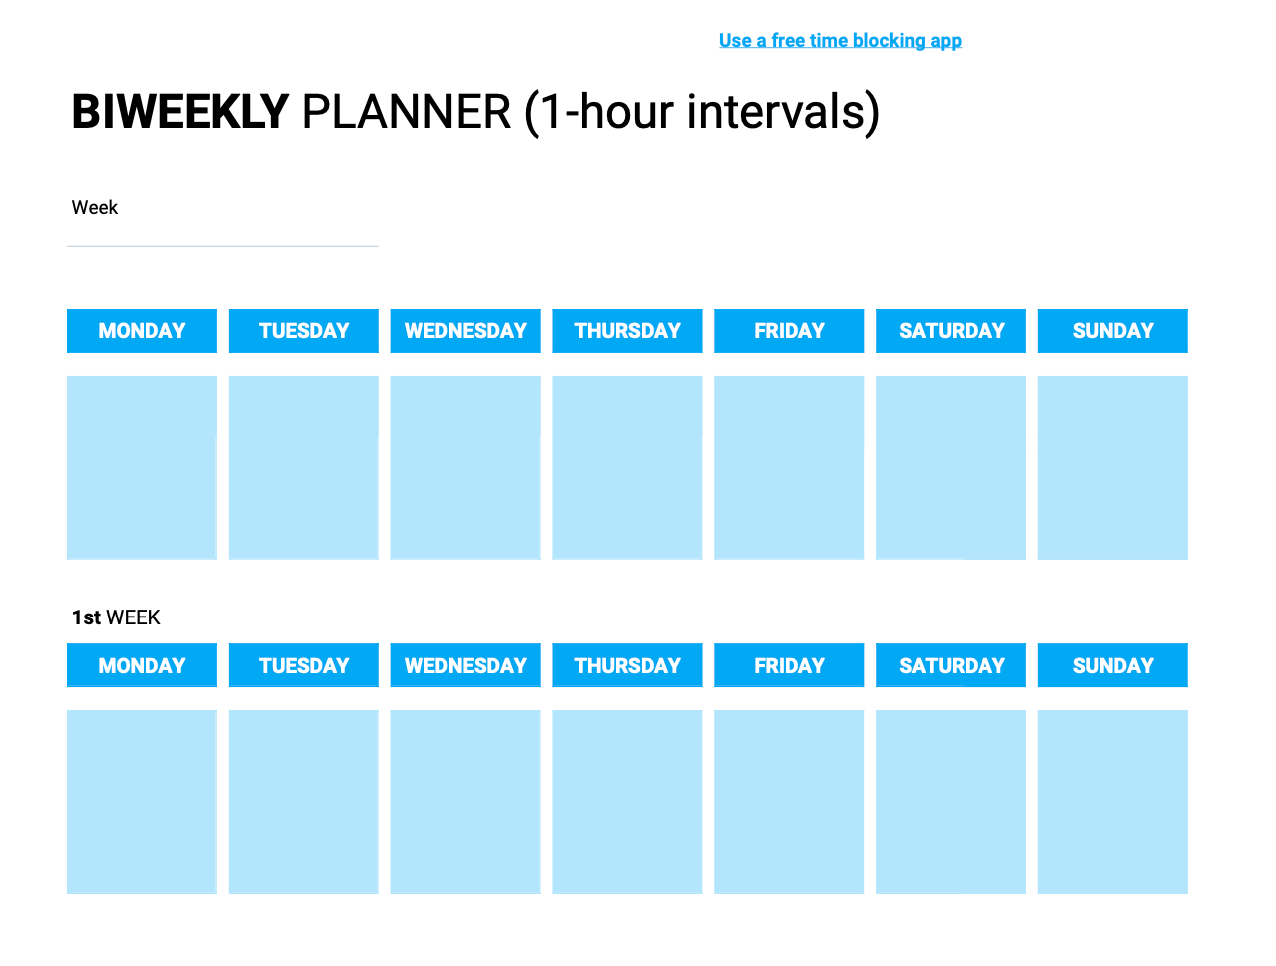 Biweekly planner